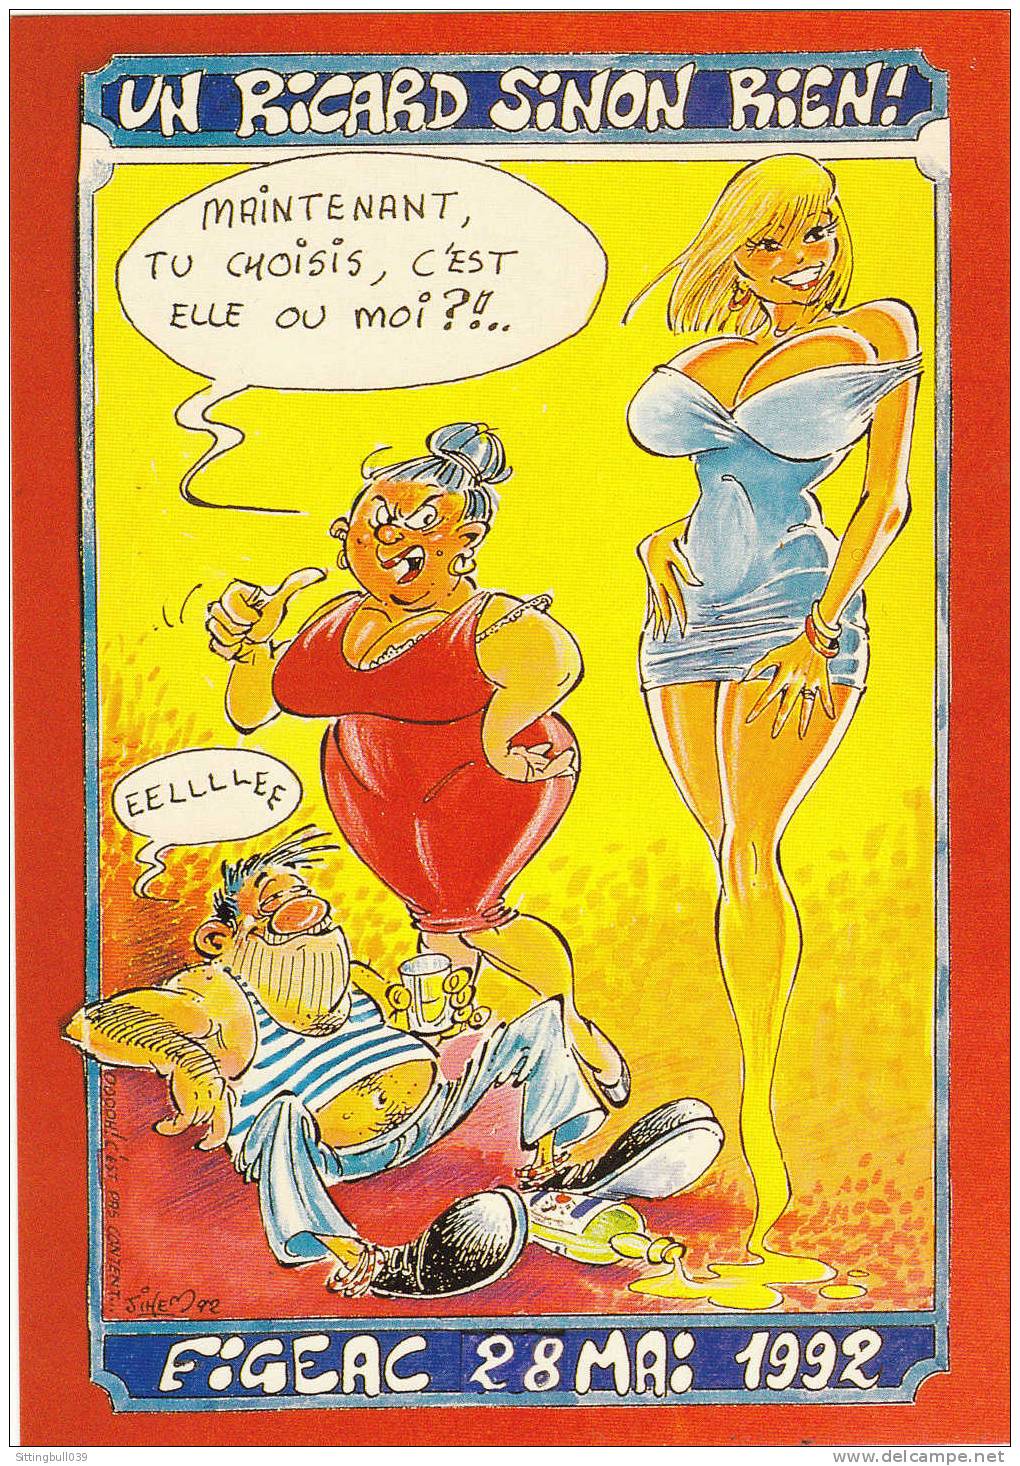 JIHEM. Carte Postale Du Xe Salon Des Collectionneurs, Figeac 1992 (LOT). Un Ricard Sinon Rien !. TL 2000 EX. - Sammlerbörsen & Sammlerausstellungen